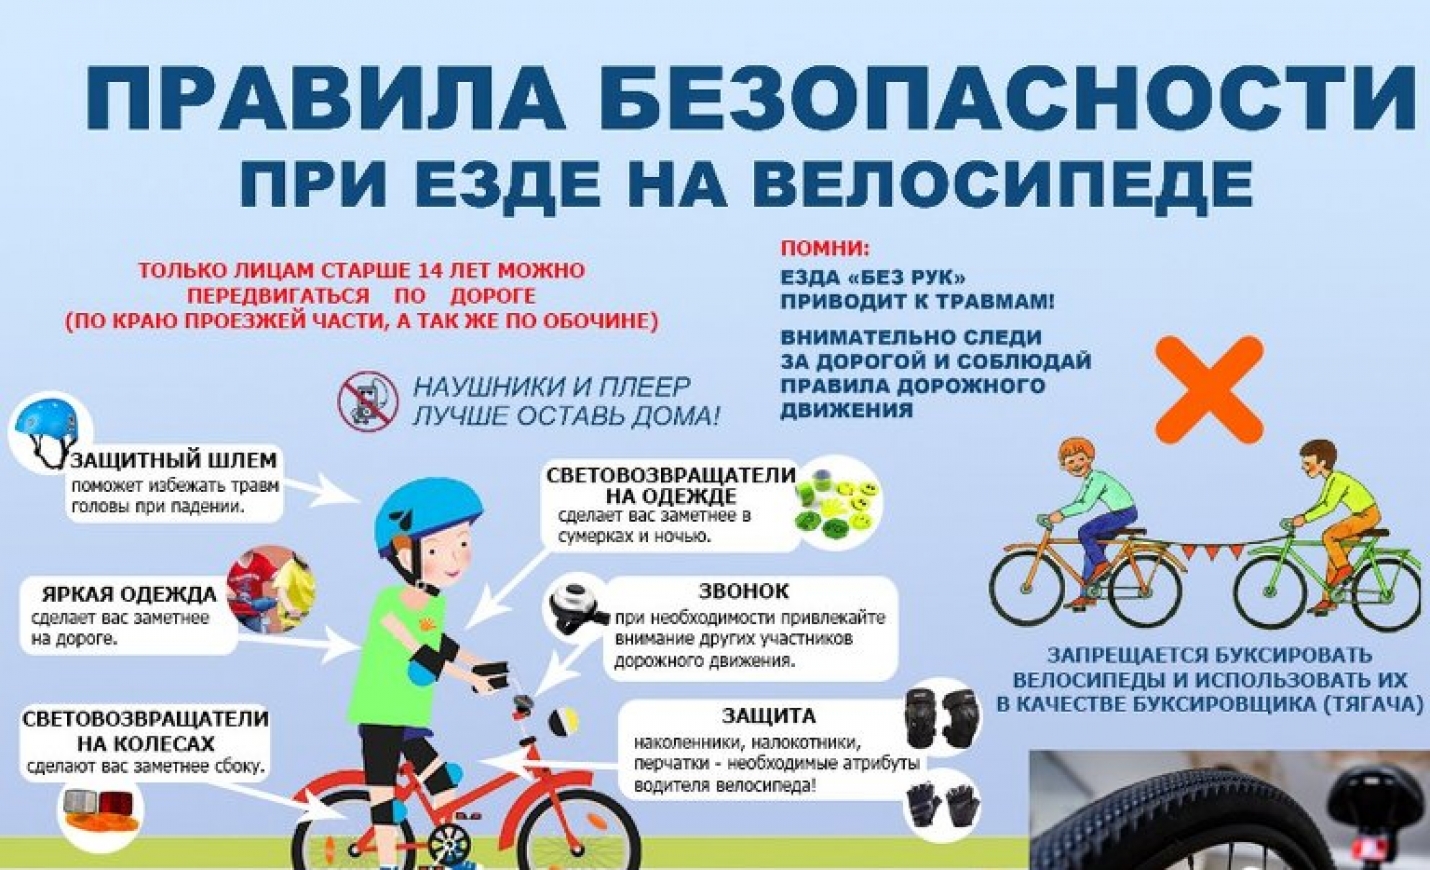 Движение велосипеда по дорогам общего пользования. Памятка ПДД для велосипедистов для детей. Правила для велосипедистов. Безопасность езды на велосипеде. Правила езды на велосипеде.